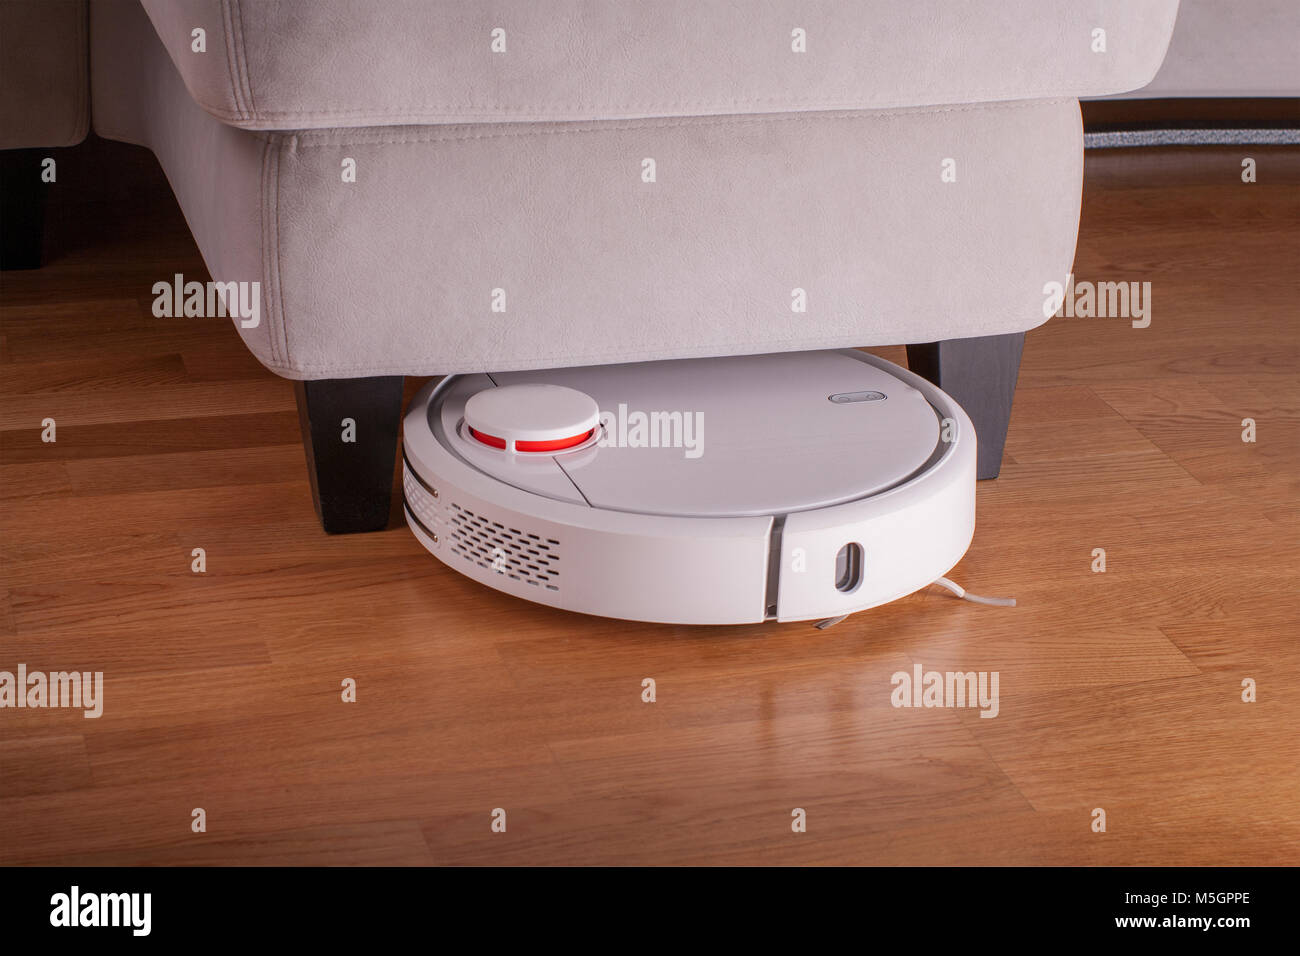 Robot vacuum cleaner runs under sofa in room. Stock Photo